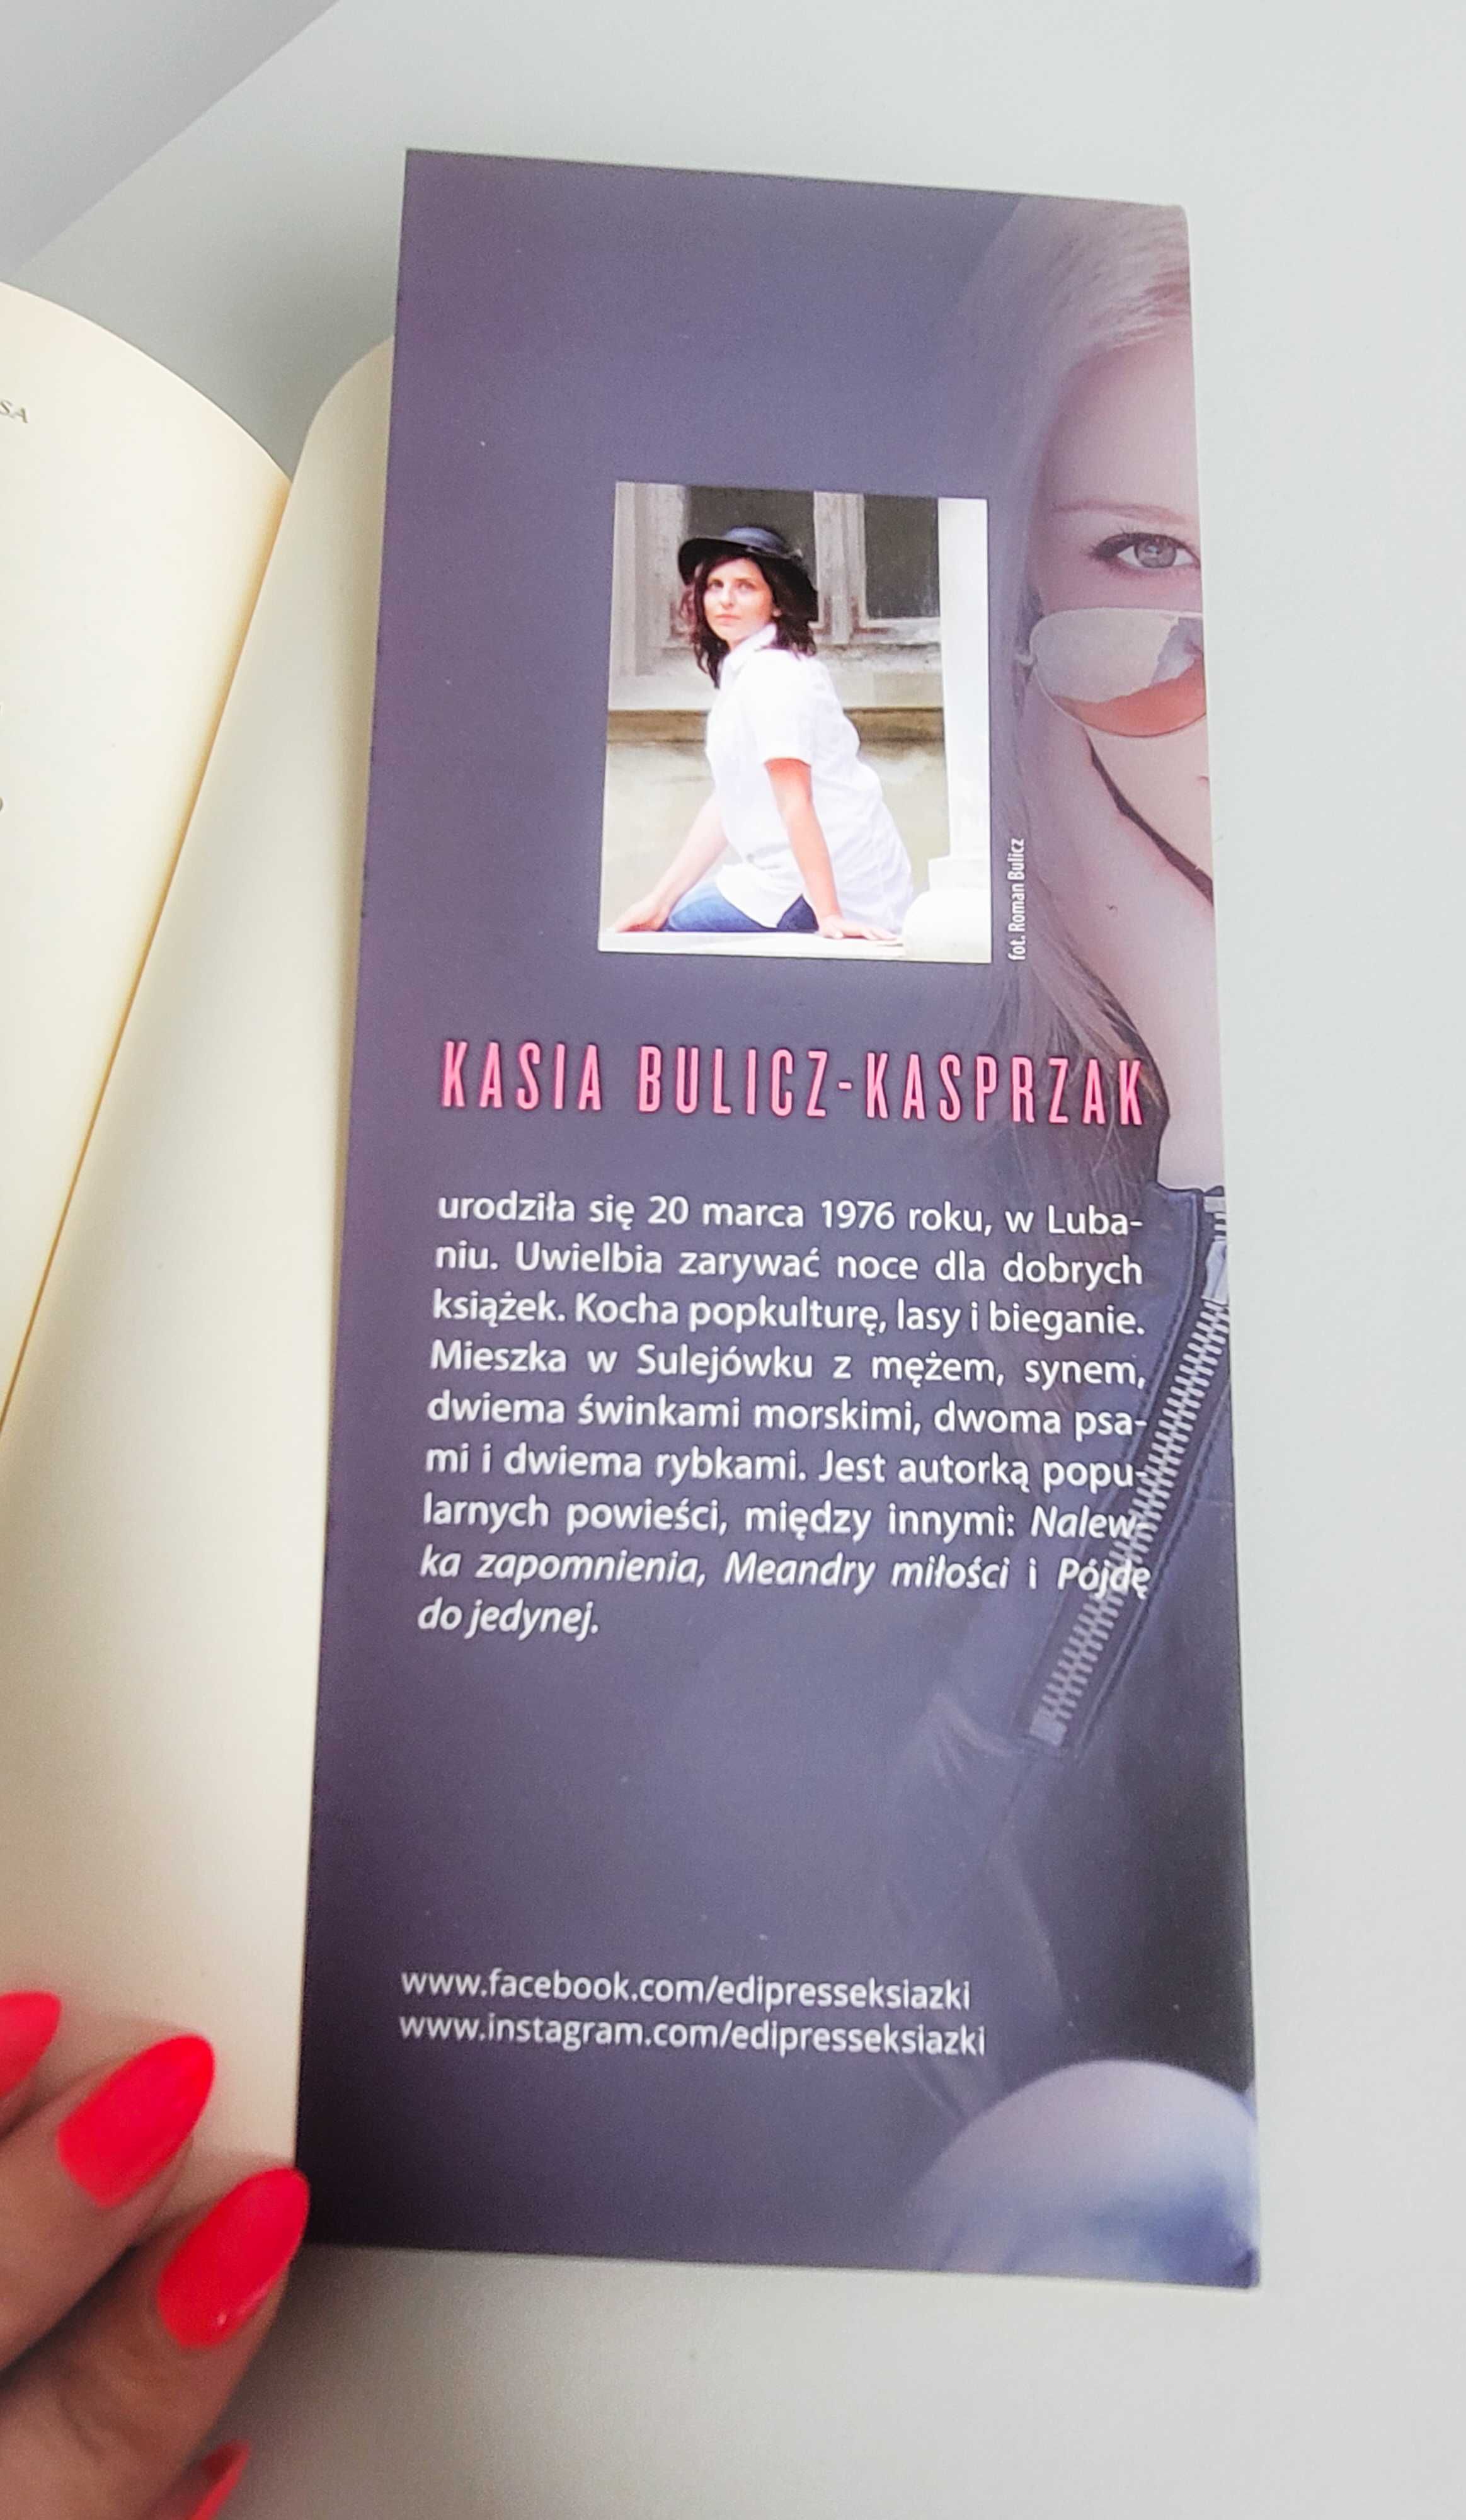 Kasia Bulicz-Kasprzak "Sprzeczne sygnały"